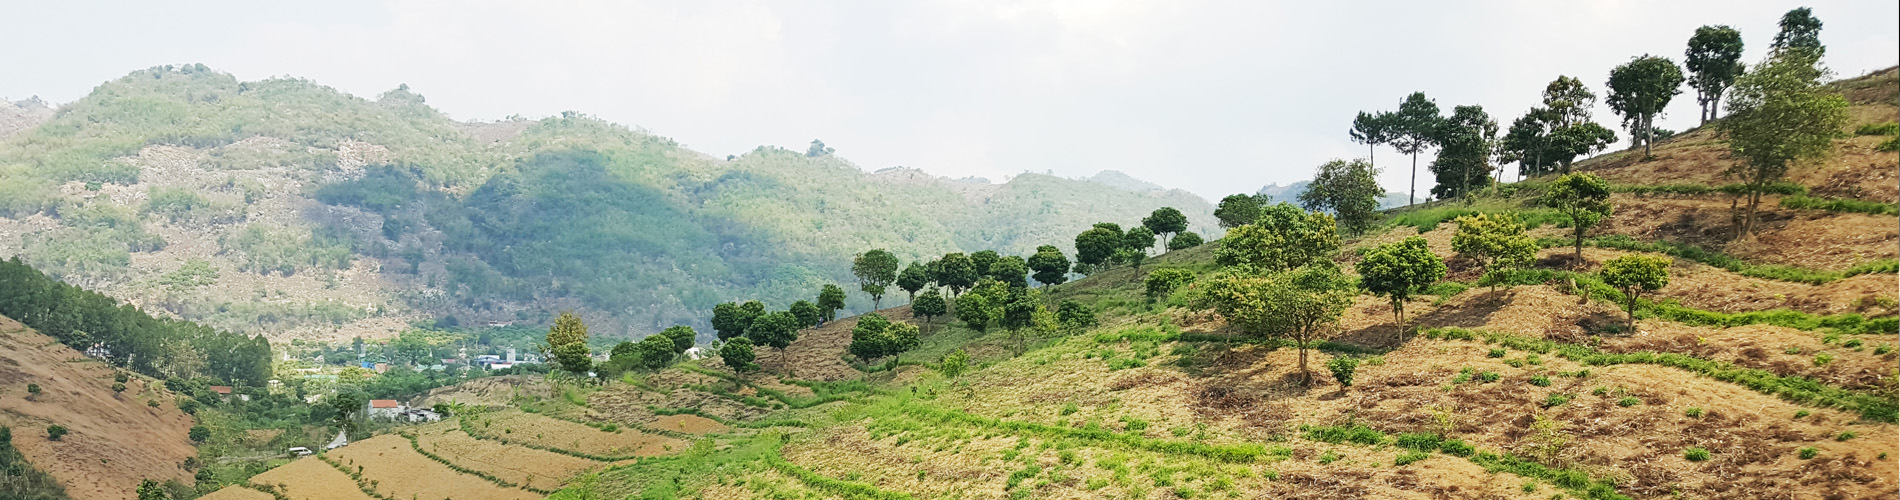 agroforestry in Vietnam